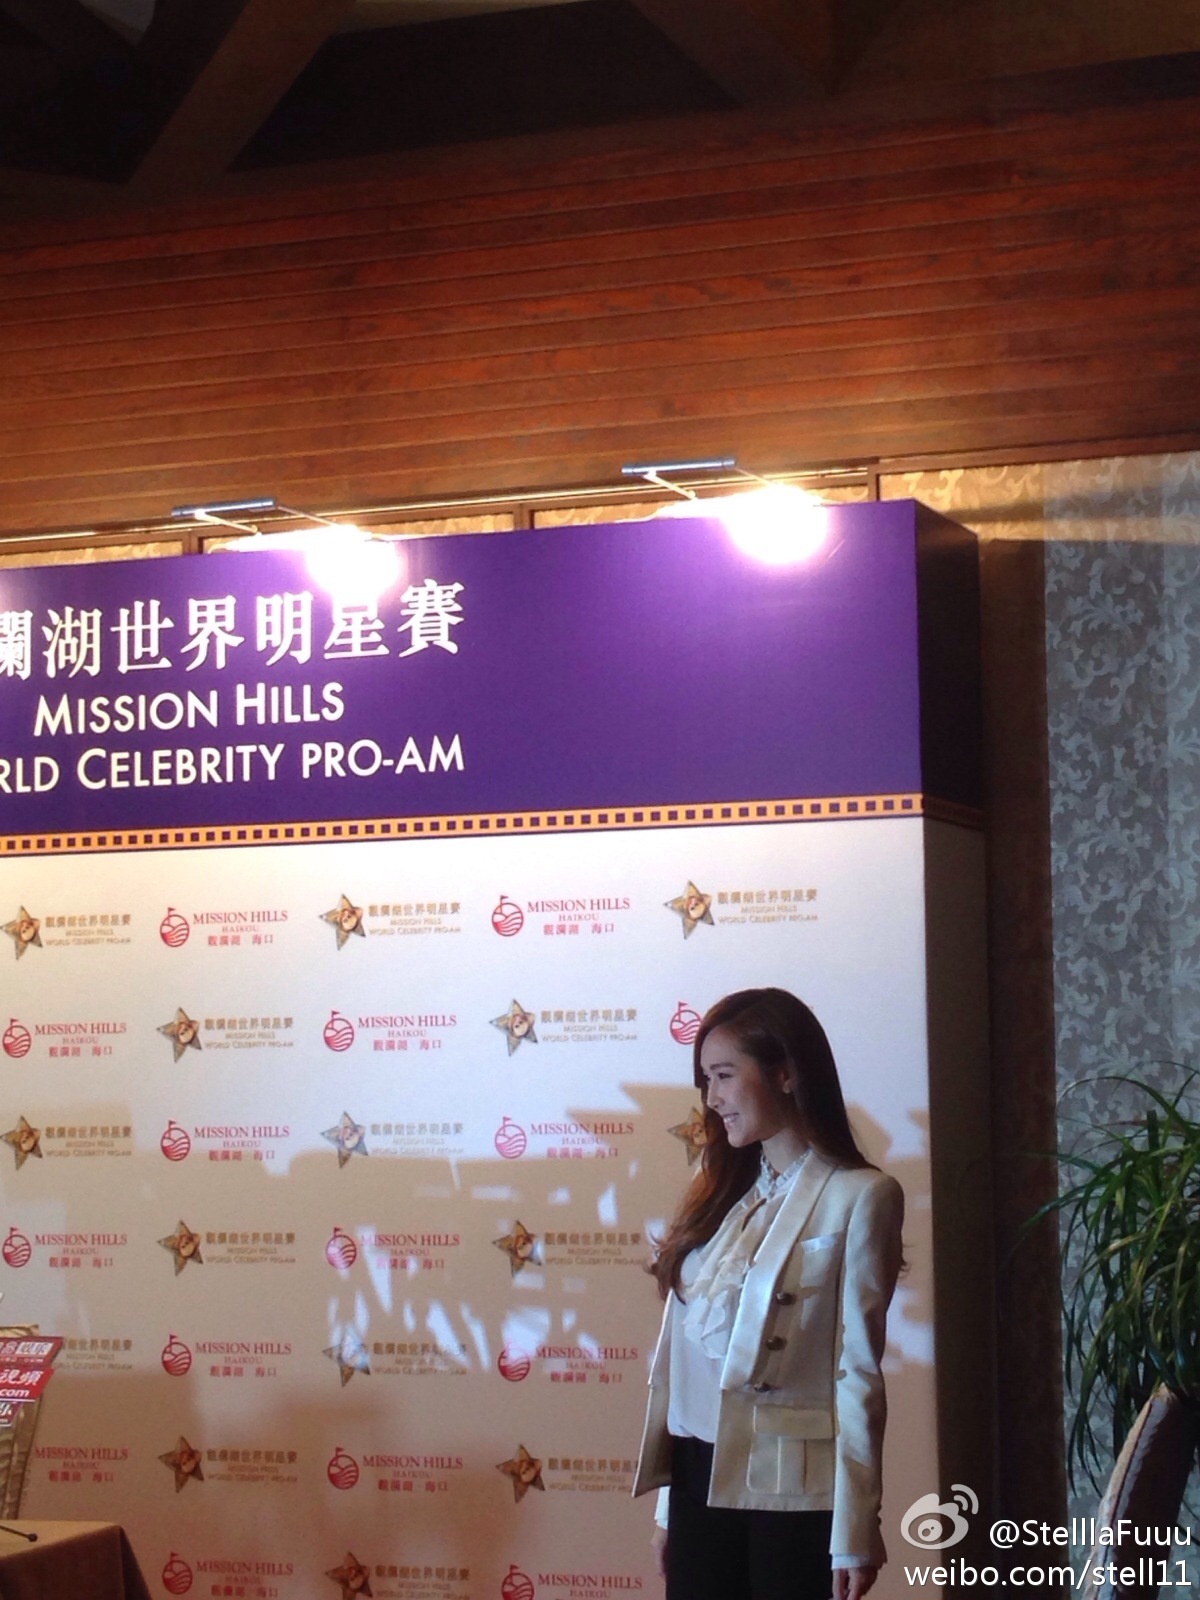 [PIC][23/24/25/26-10-2014]Jessica xuất hiện tại Trung Quốc để tham dự "Stars of 2014 Mission Hills World Celebrity Pro-Am" vào trưa nay 3e38cfccjw1ellfto49pqj20xc18gdq2